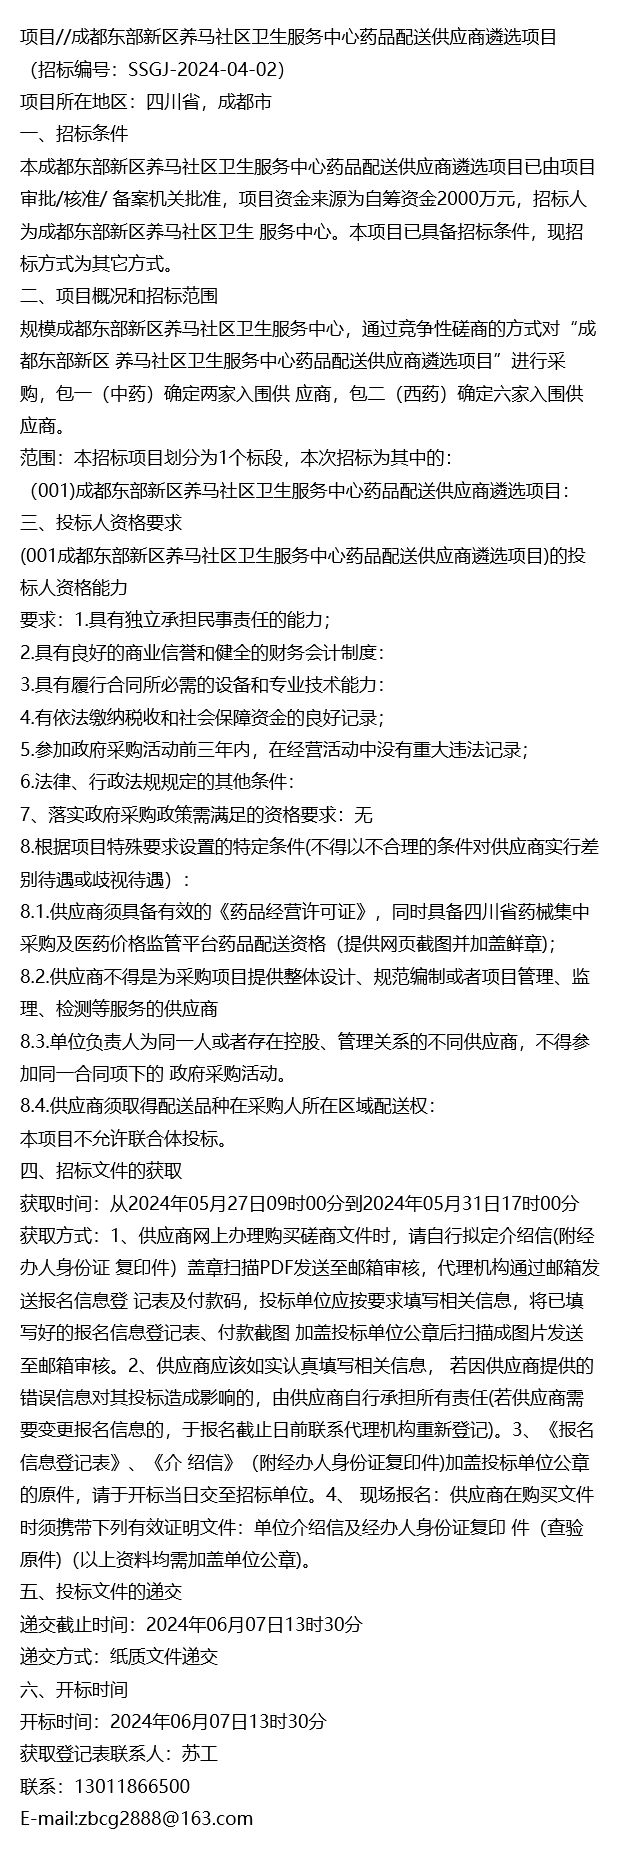 项目//成都东部新区养马社区卫生服务中心药品配送供应商遴选项目